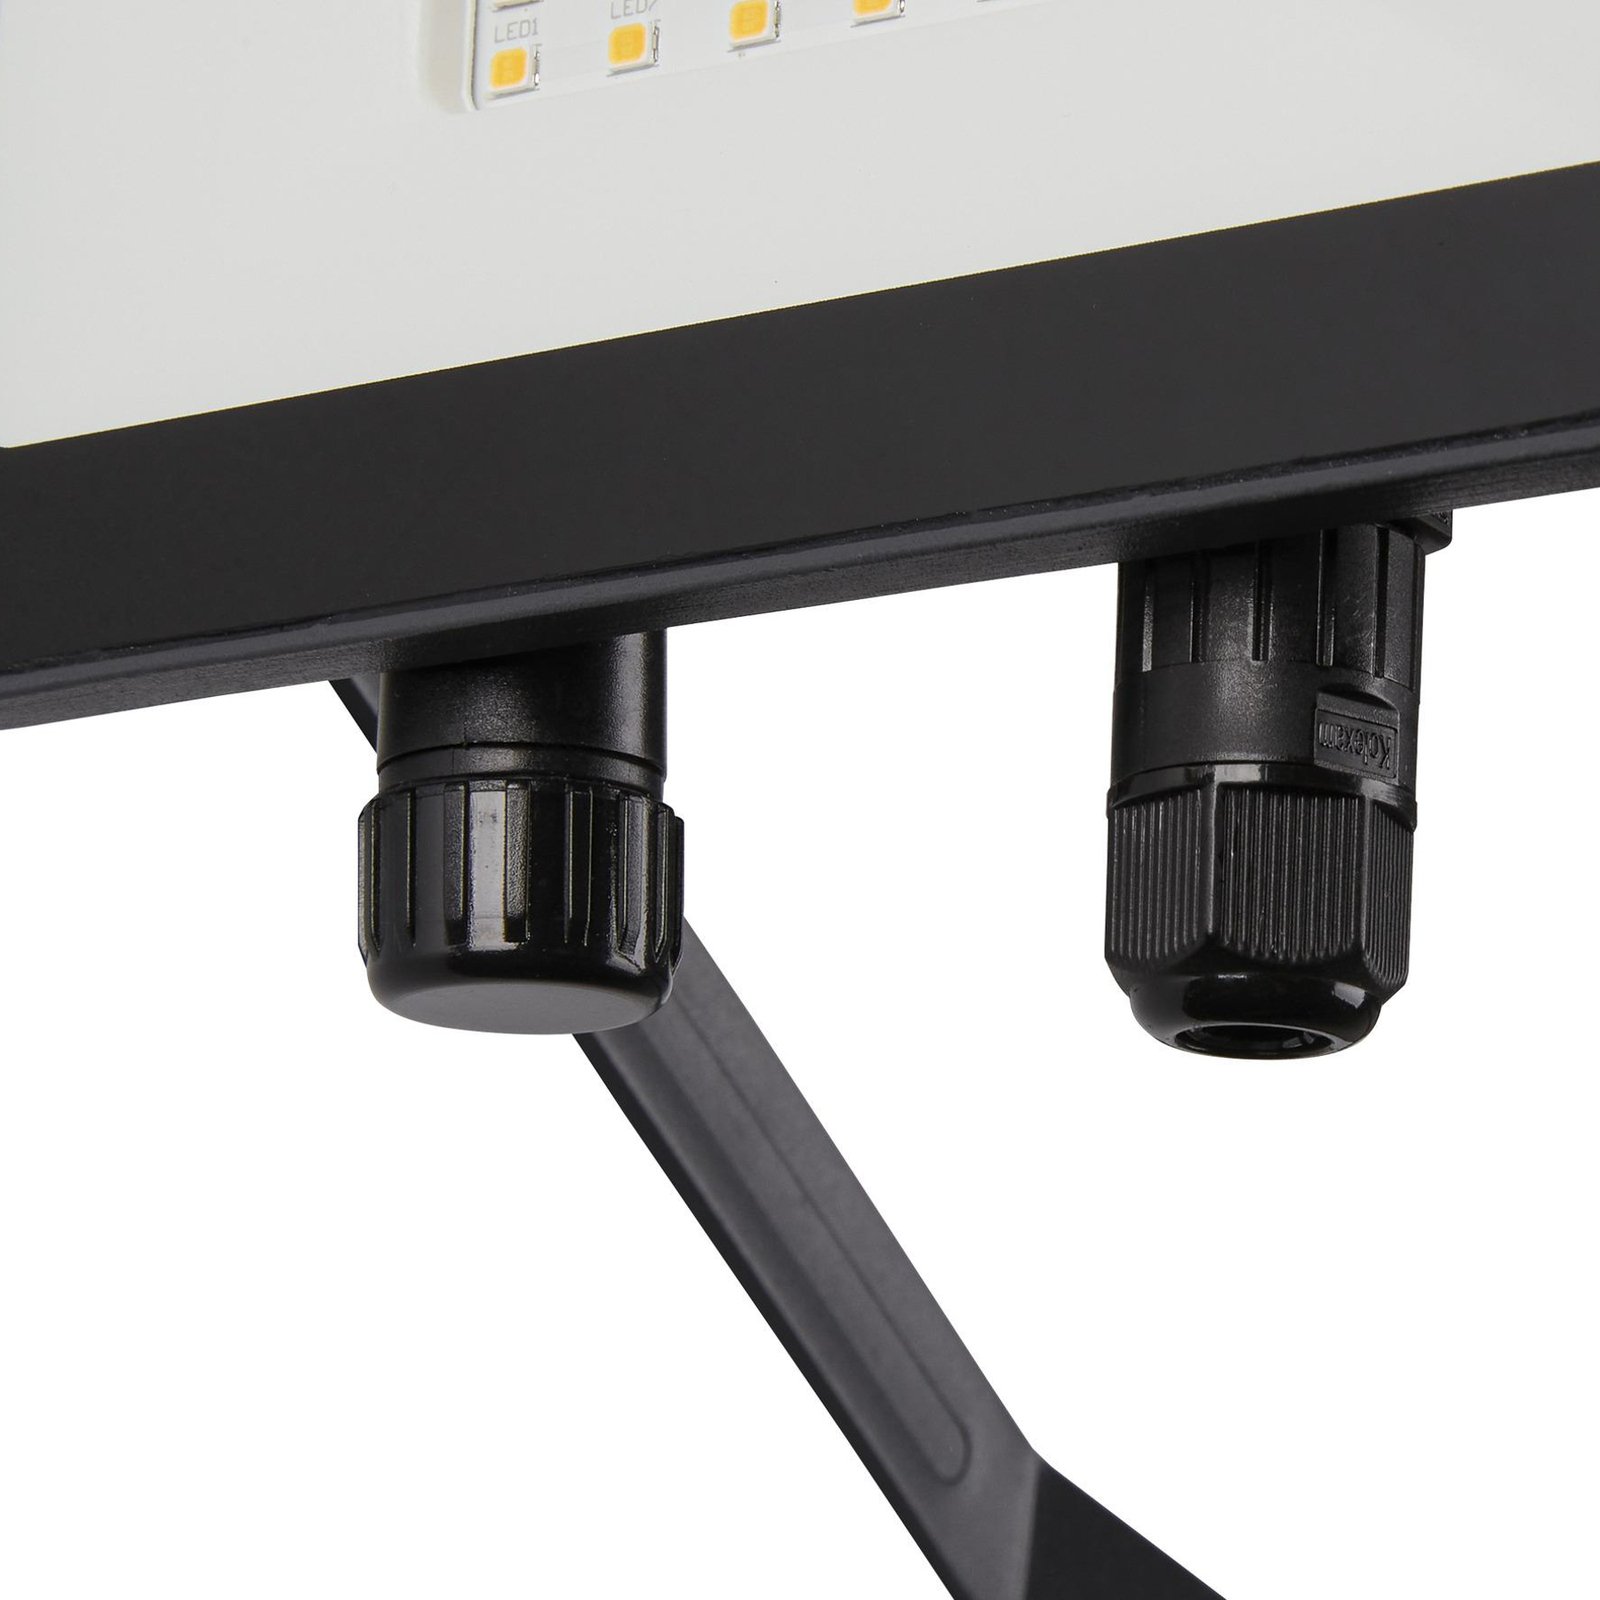 SLV Floodi LED projetor de exterior, IP65, largura 16 cm